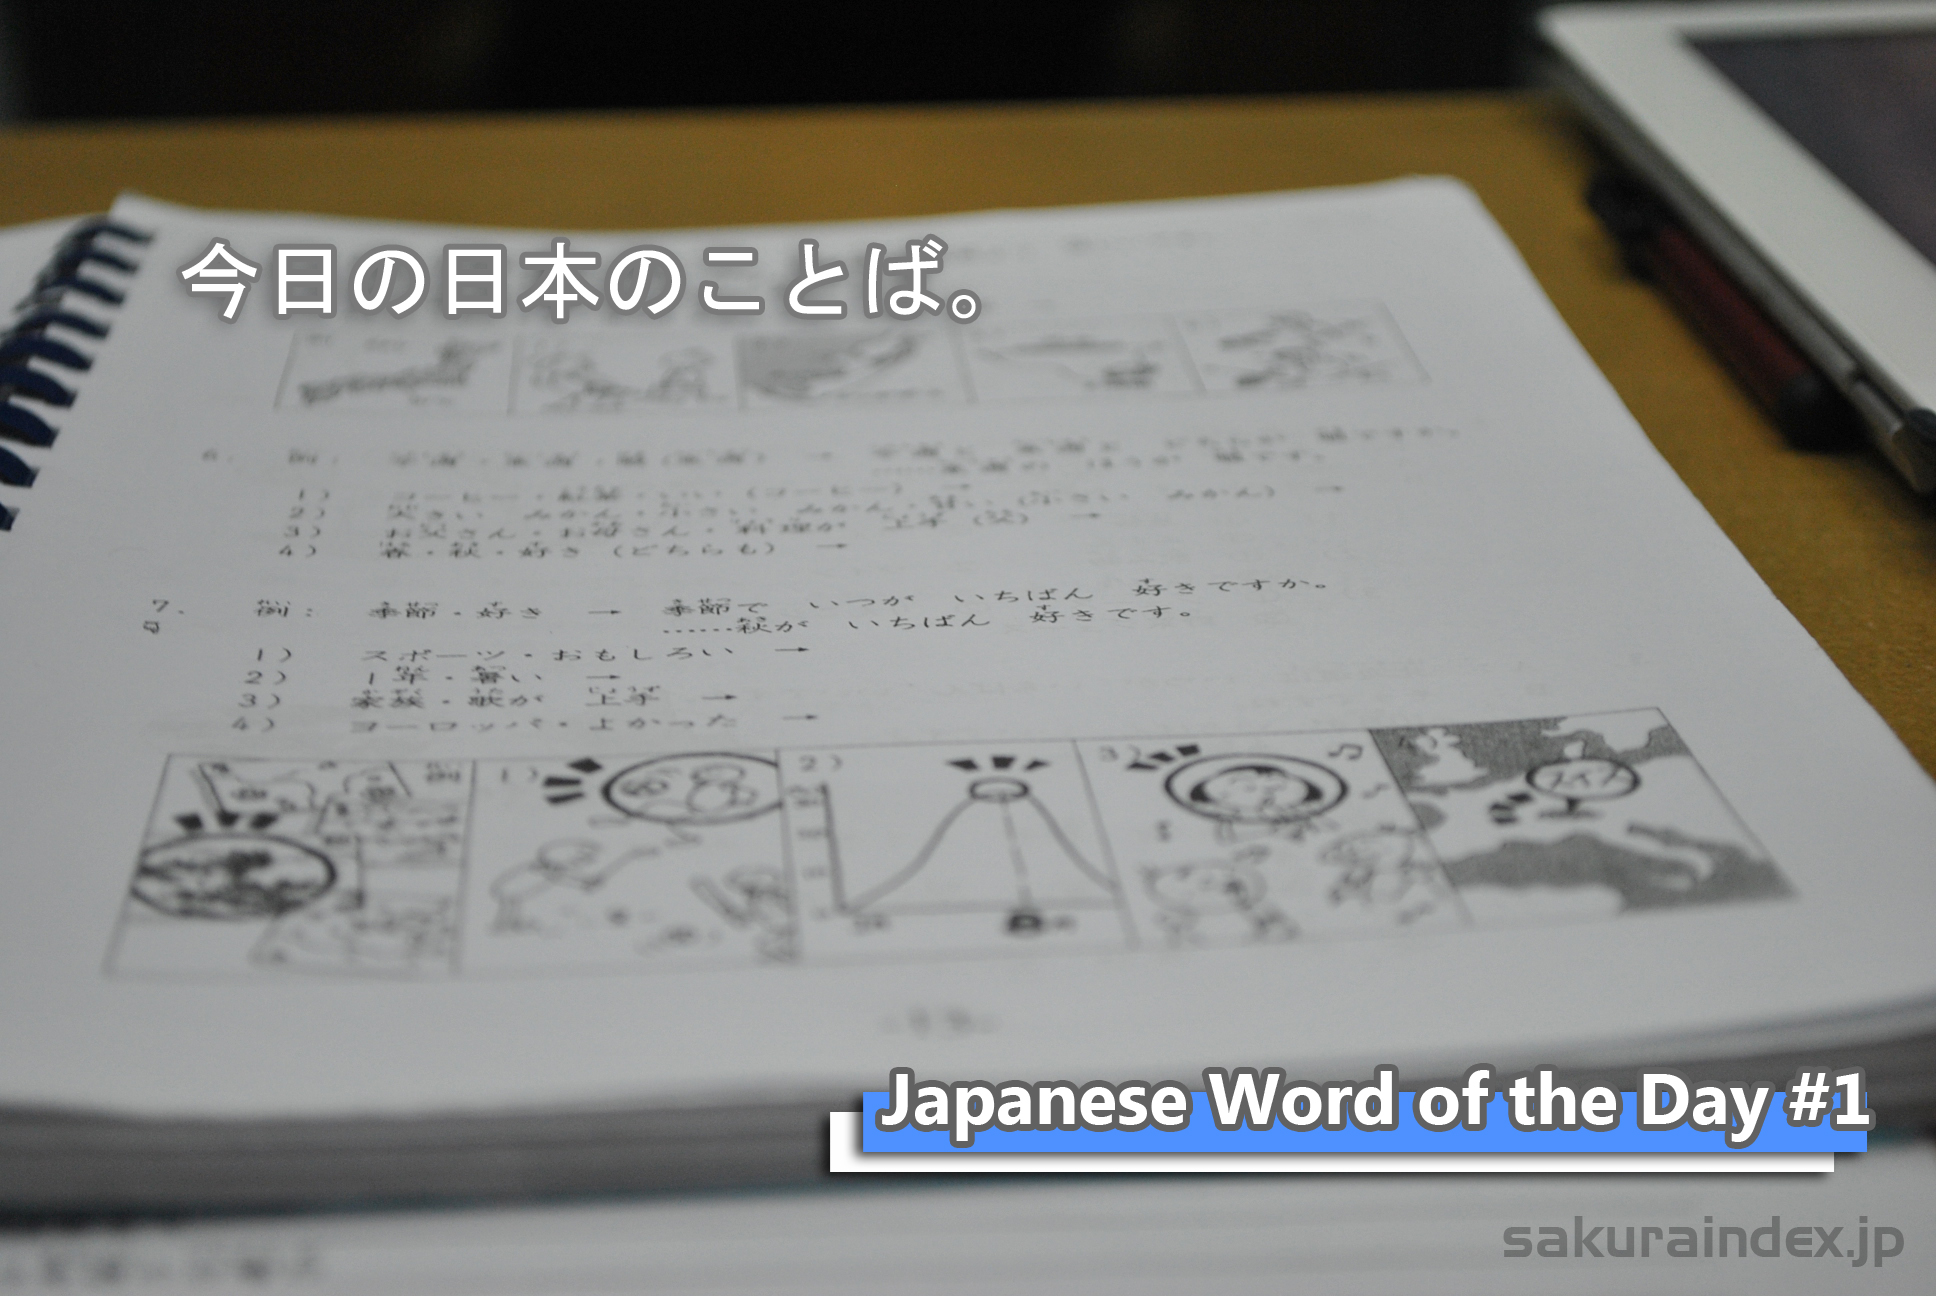 Japanese Word of the Day #1: Benkyoushimasu